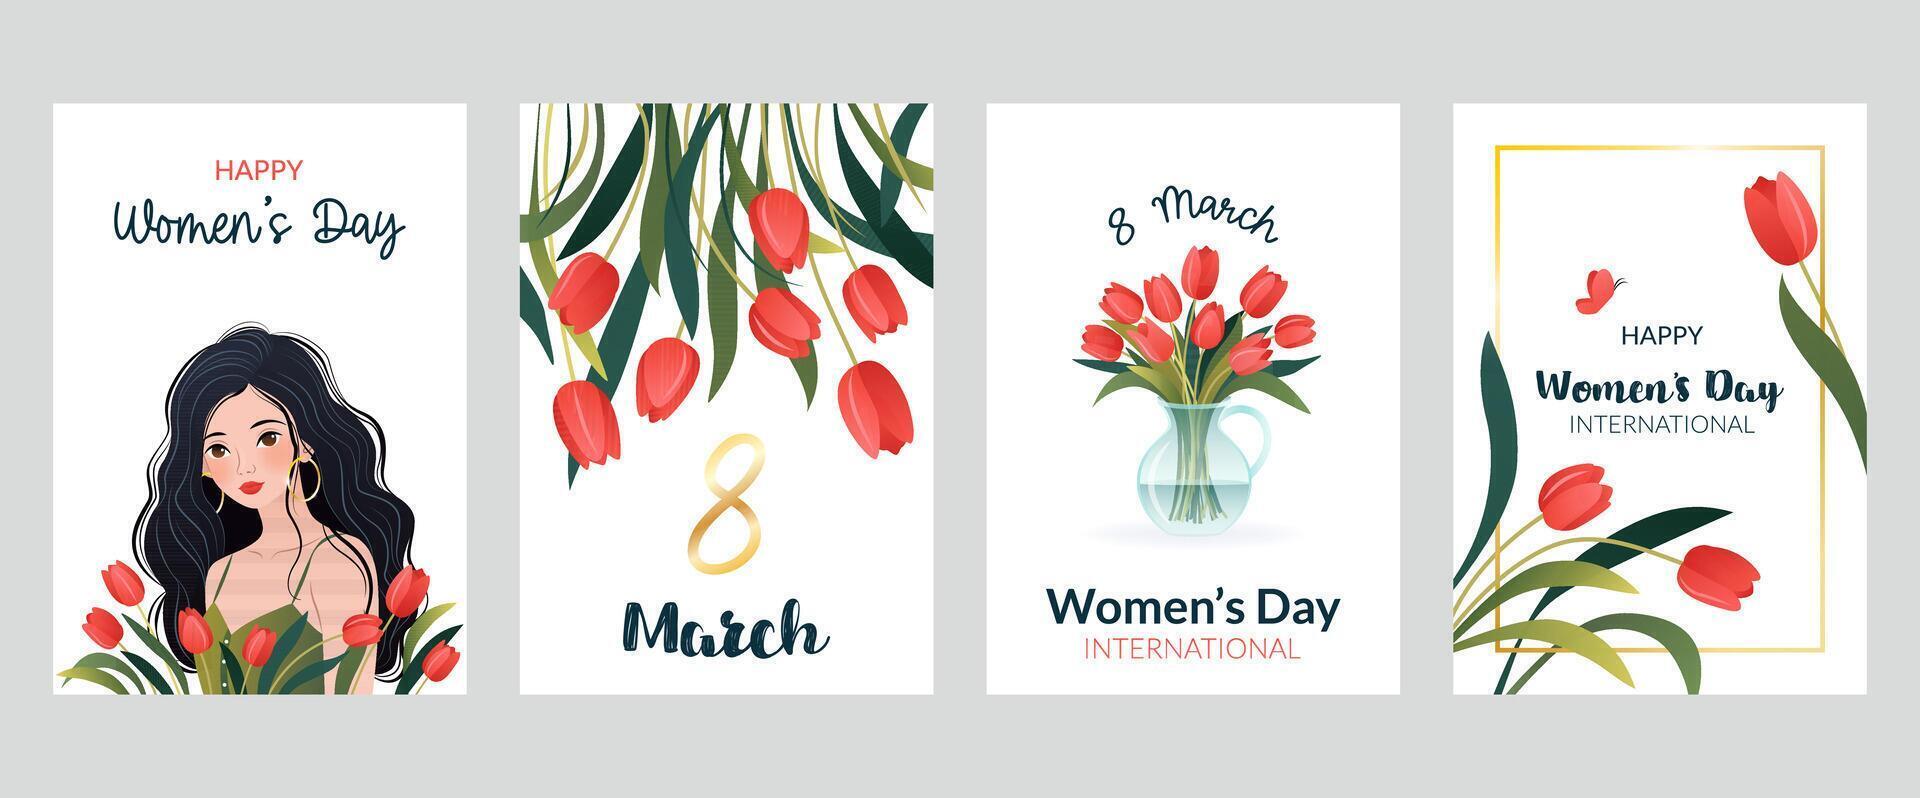 Internationale vrouwen dag verticaal affiches, banners set. 8 maart. tekenfilm vrouw, tulpen, boeket van bloemen in vaas. ontwerp voor campagne, sociaal media na, ansichtkaart, promo. vector illustraties.